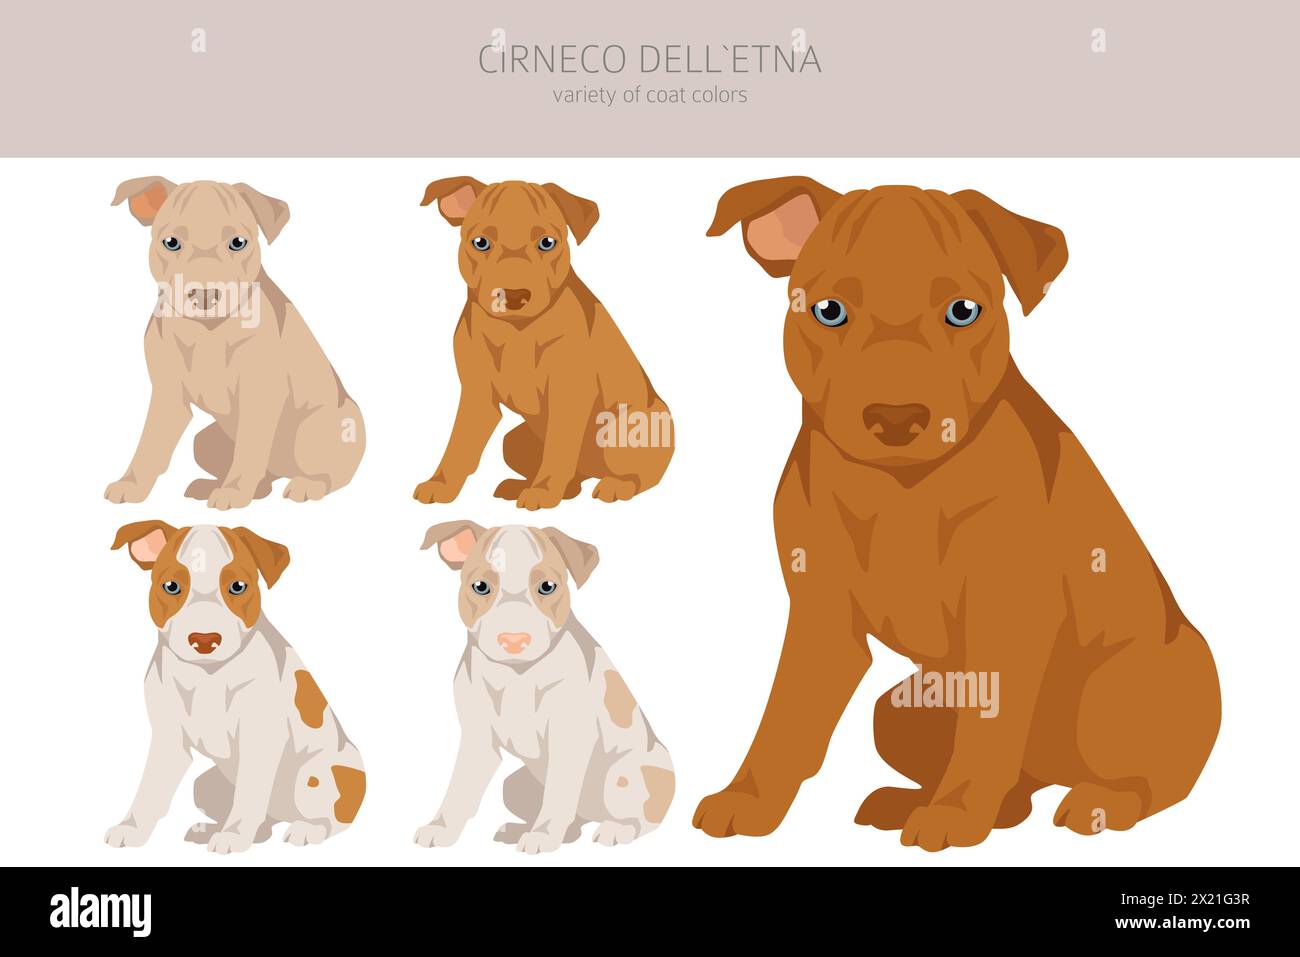 Cirneco dell'Etna, cagnolino siciliano. Pose diverse, set di colori per cappotti. Illustrazione vettoriale Illustrazione Vettoriale